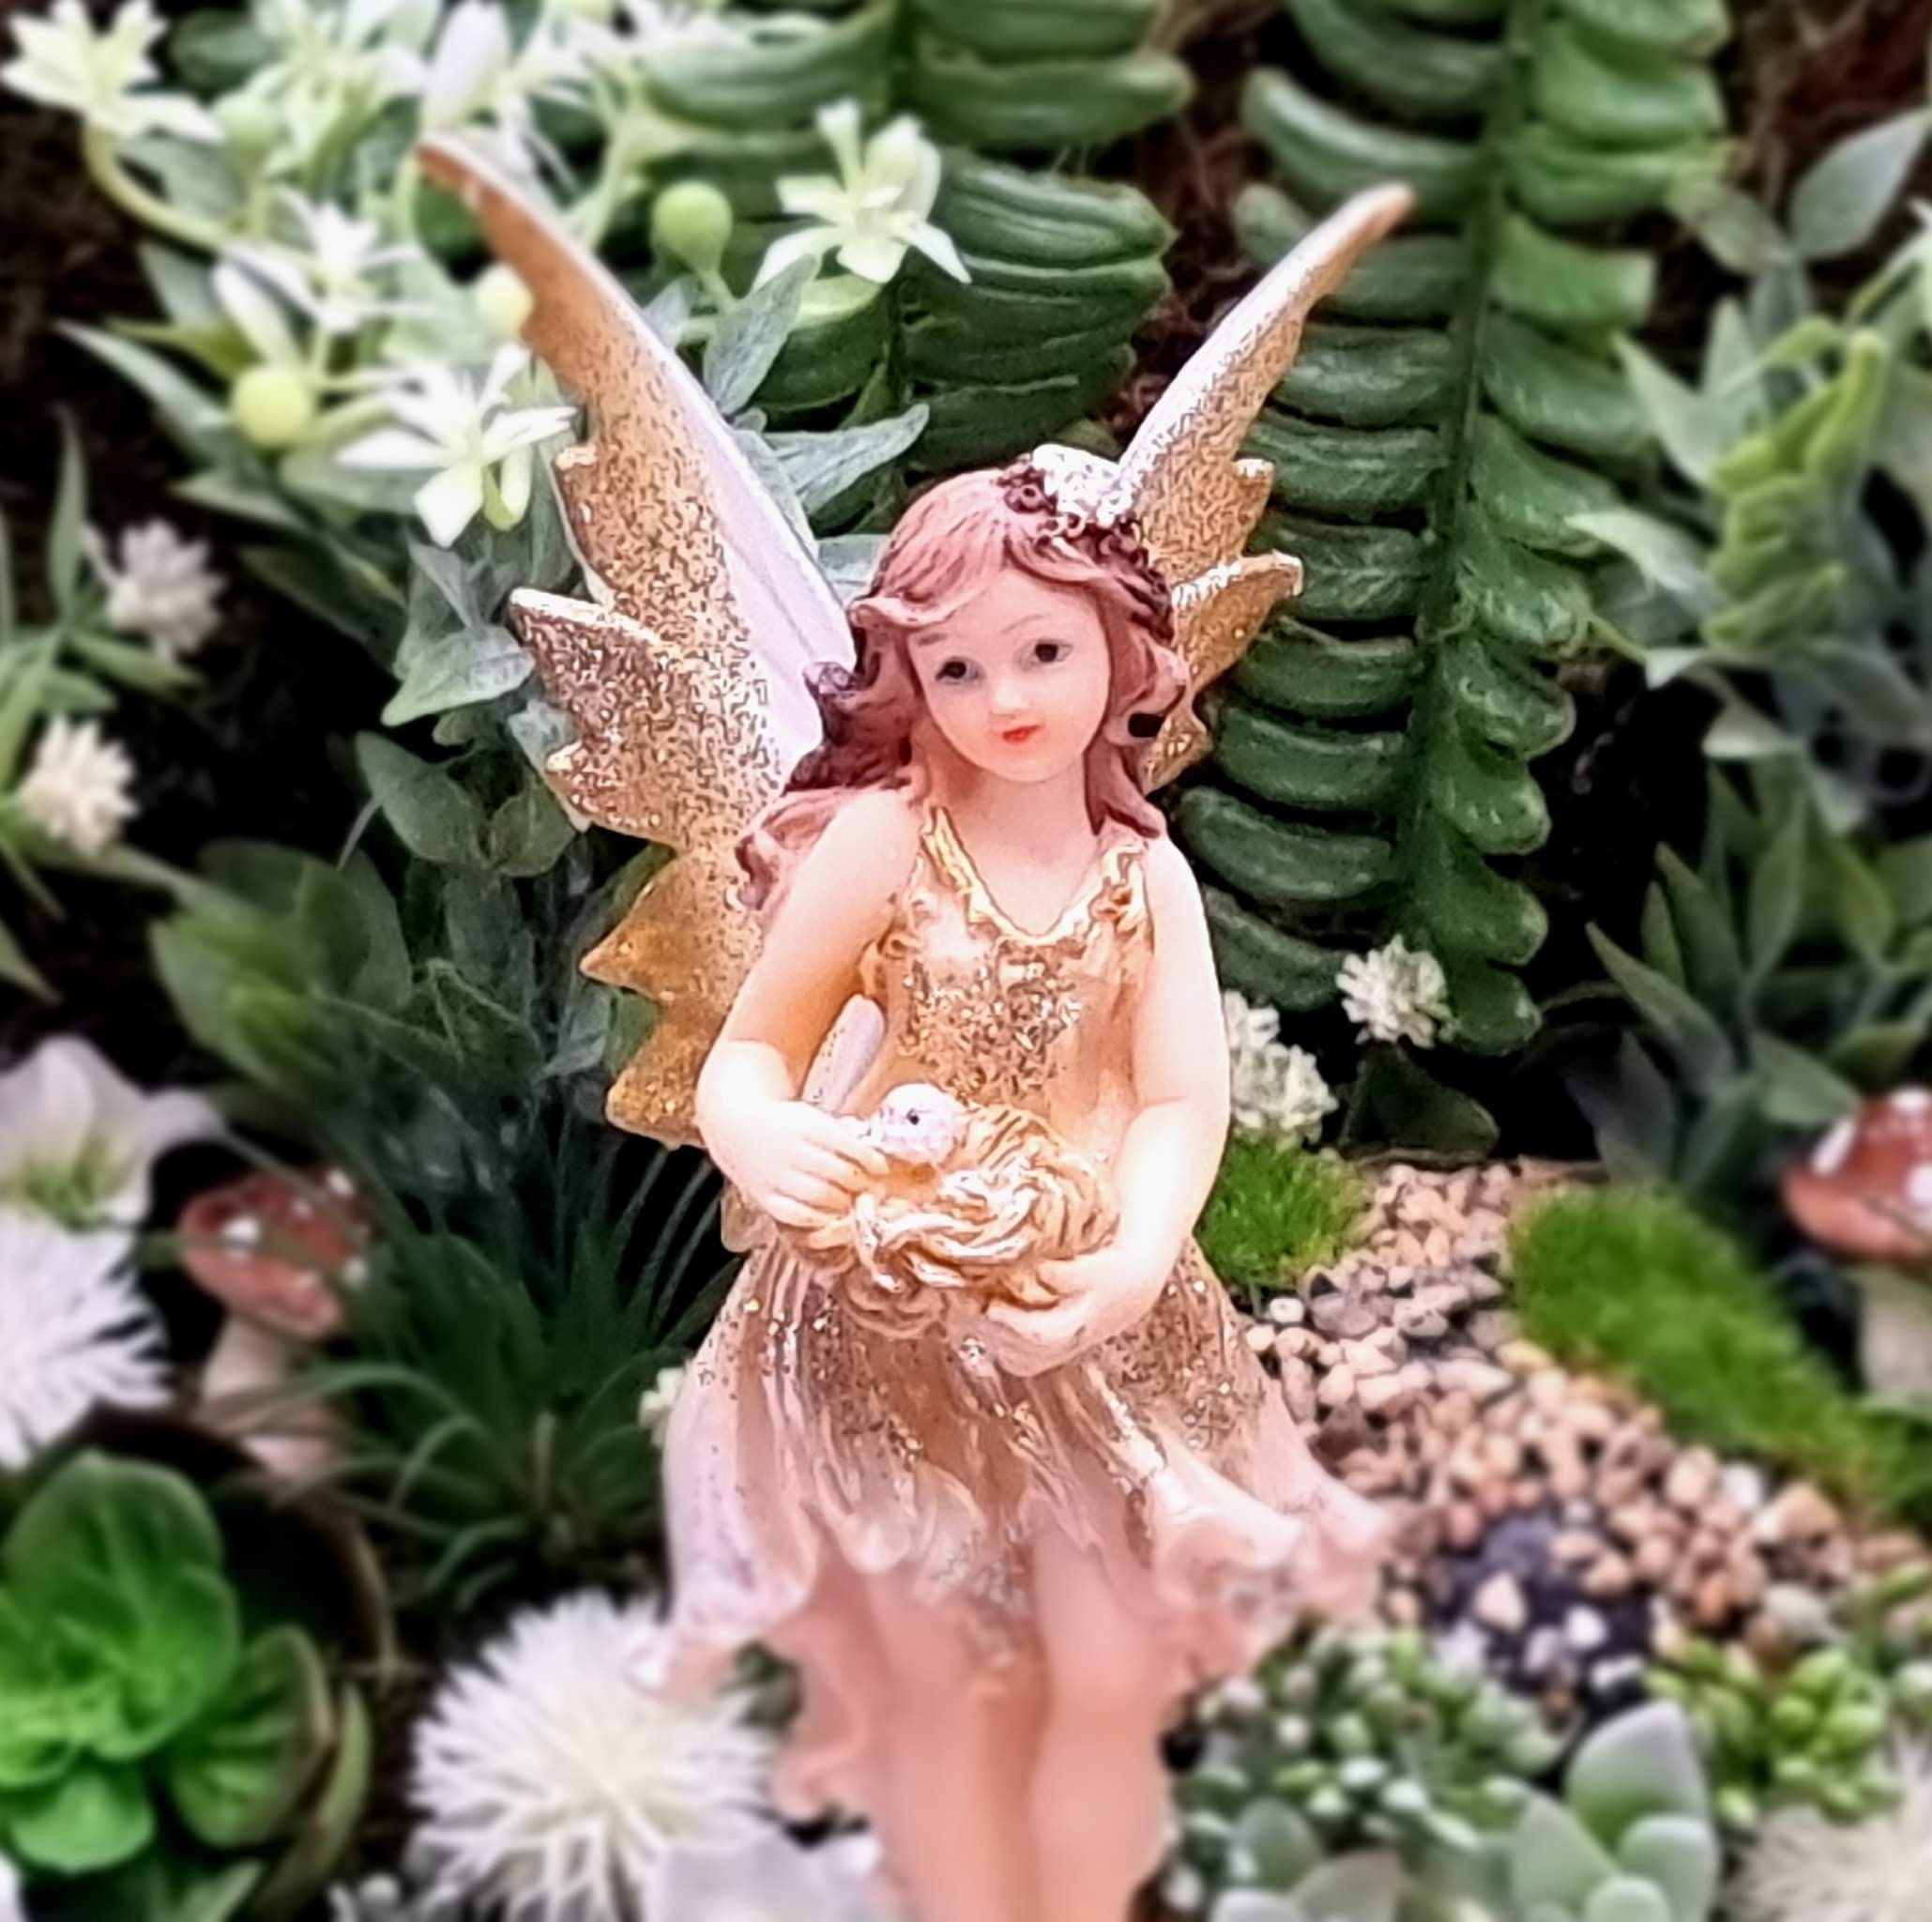 6 piezas por lote de figuras de ángel de hadas en miniatura de resina, mini  hadas, estatua de hadas para jardín, adornos de decoración